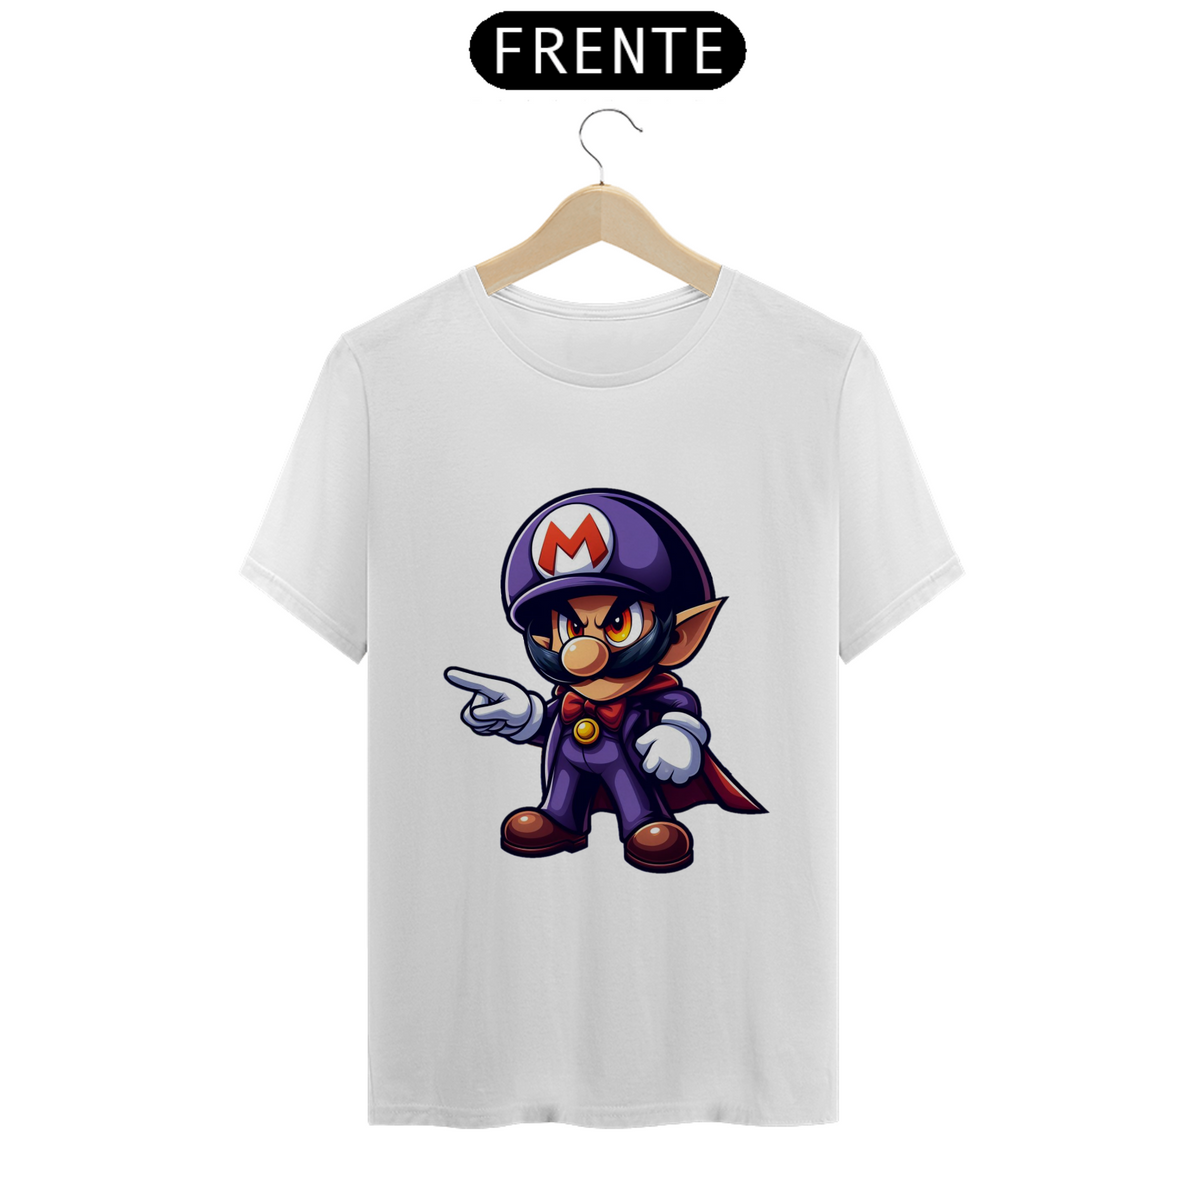 Nome do produto: T-Shirt Mario Mage